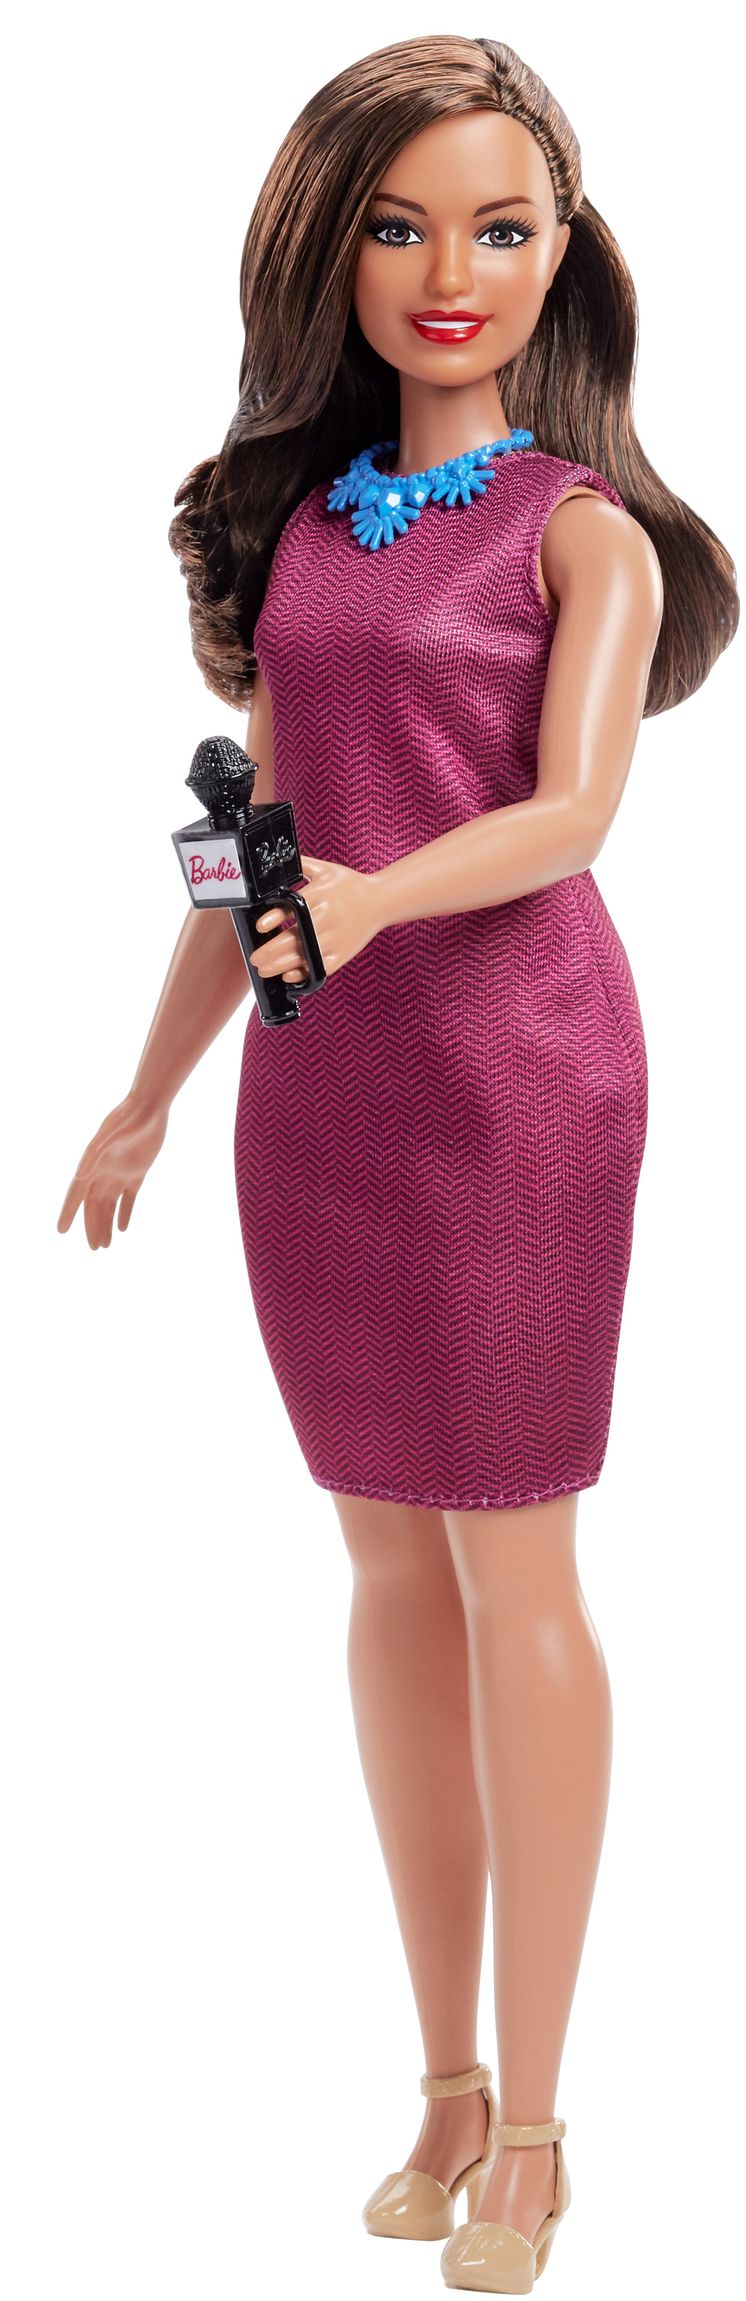 Barbie 60. Jubiläum Karriere-Puppe Journalistin